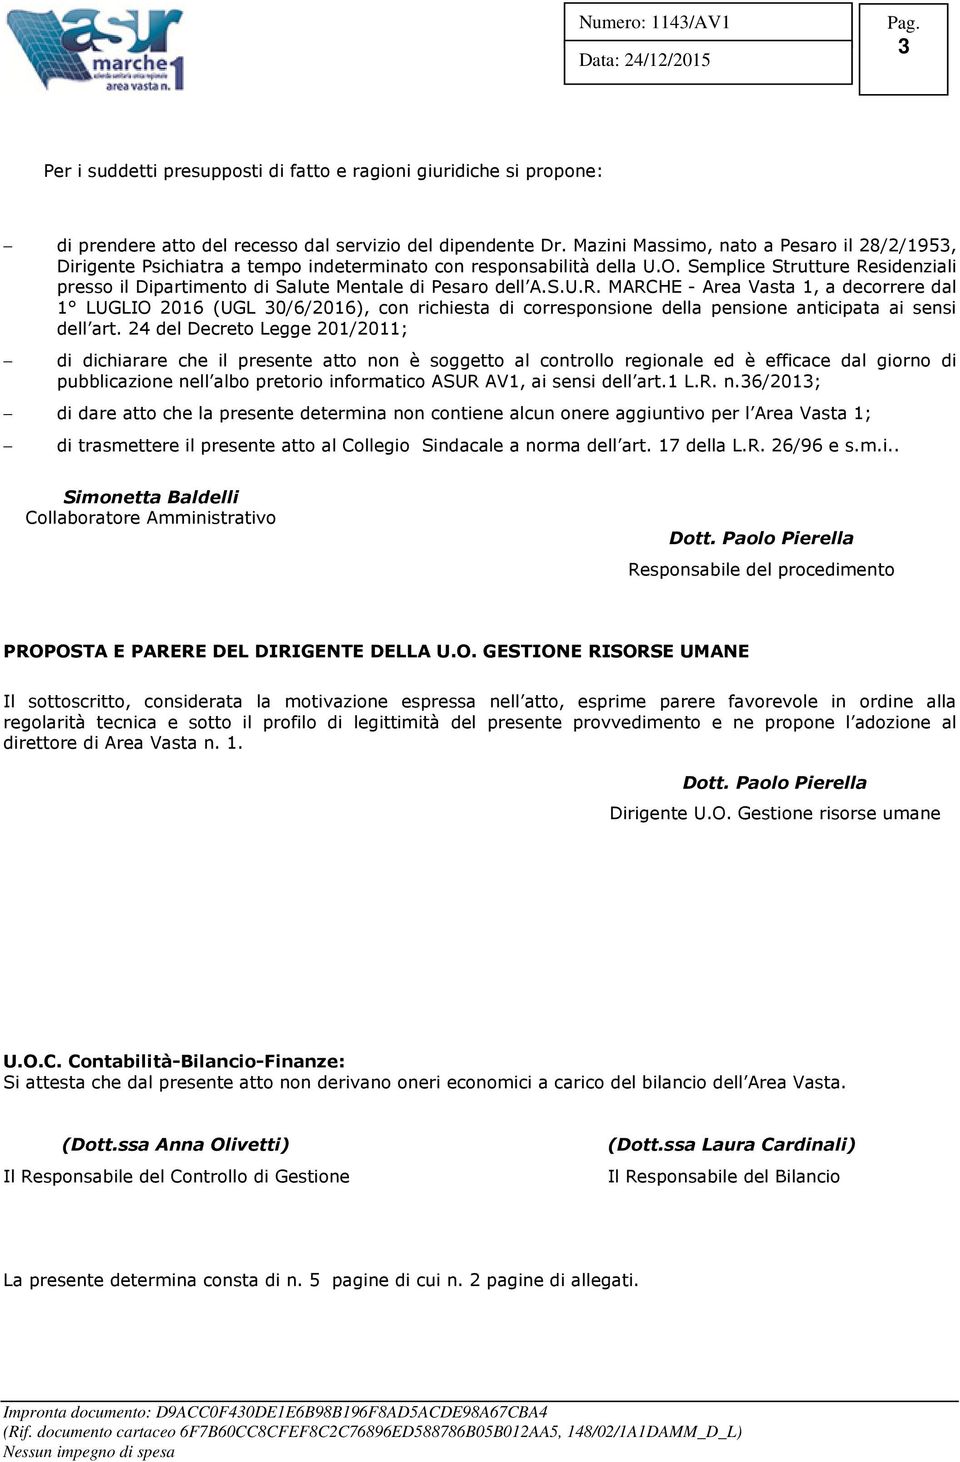 Semplice Strutture Residenziali presso il Dipartimento di Salute Mentale di Pesaro dell A.S.U.R. MARCHE - Area Vasta 1, a decorrere dal 1 LUGLIO 2016 (UGL 30/6/2016), con richiesta di corresponsione della pensione anticipata ai sensi dell art.